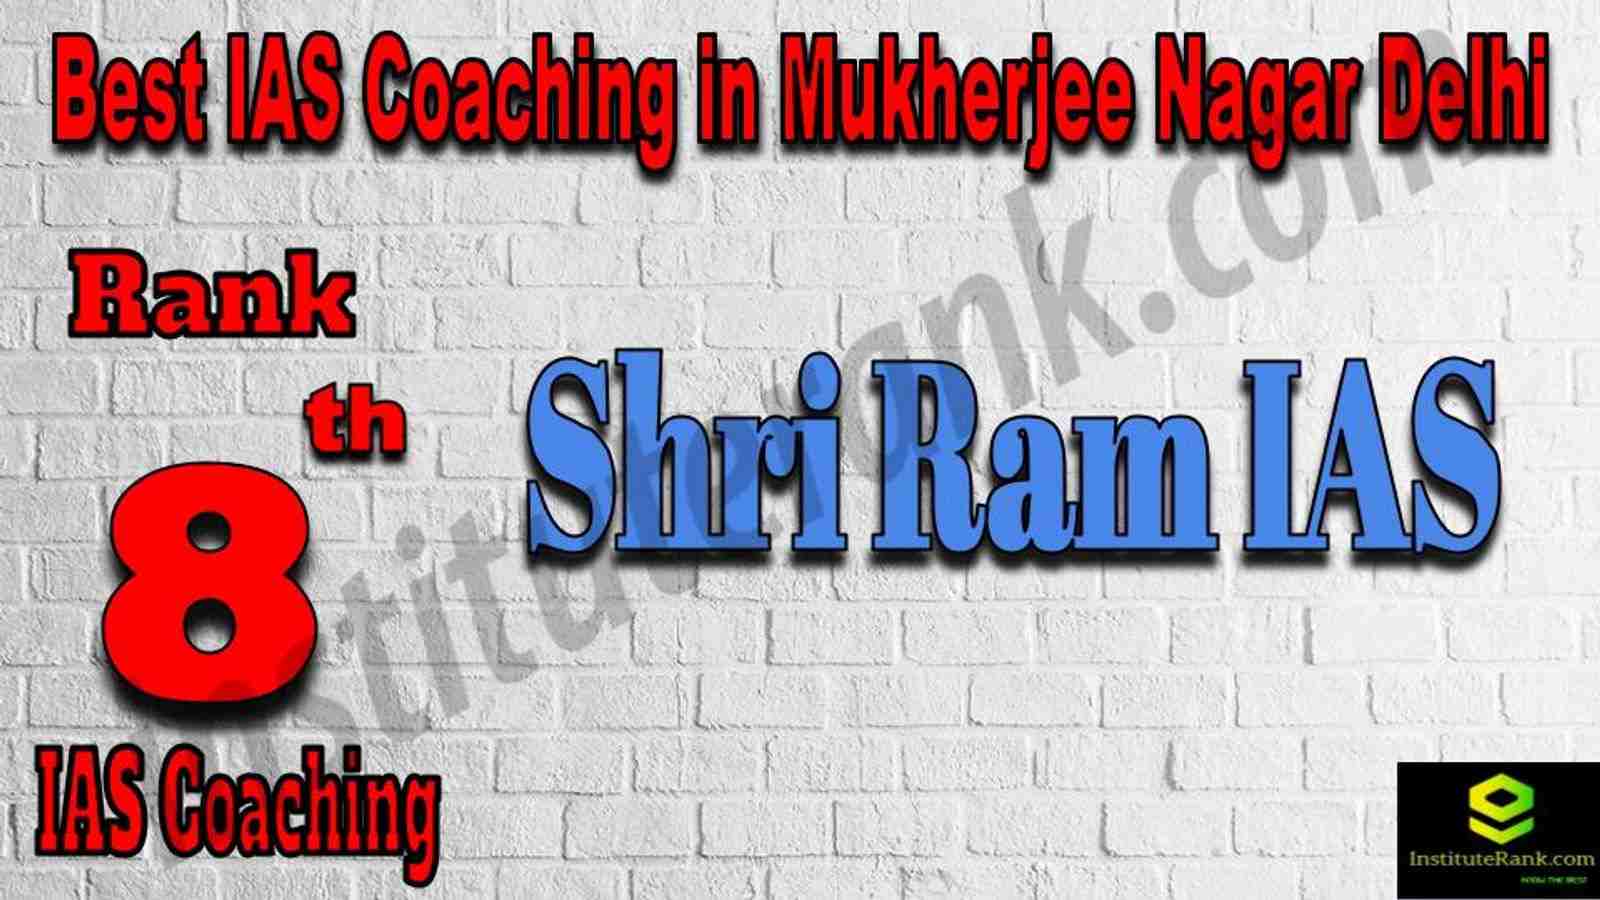 8th Best IAS Coaching in Mukherjee Nagar 